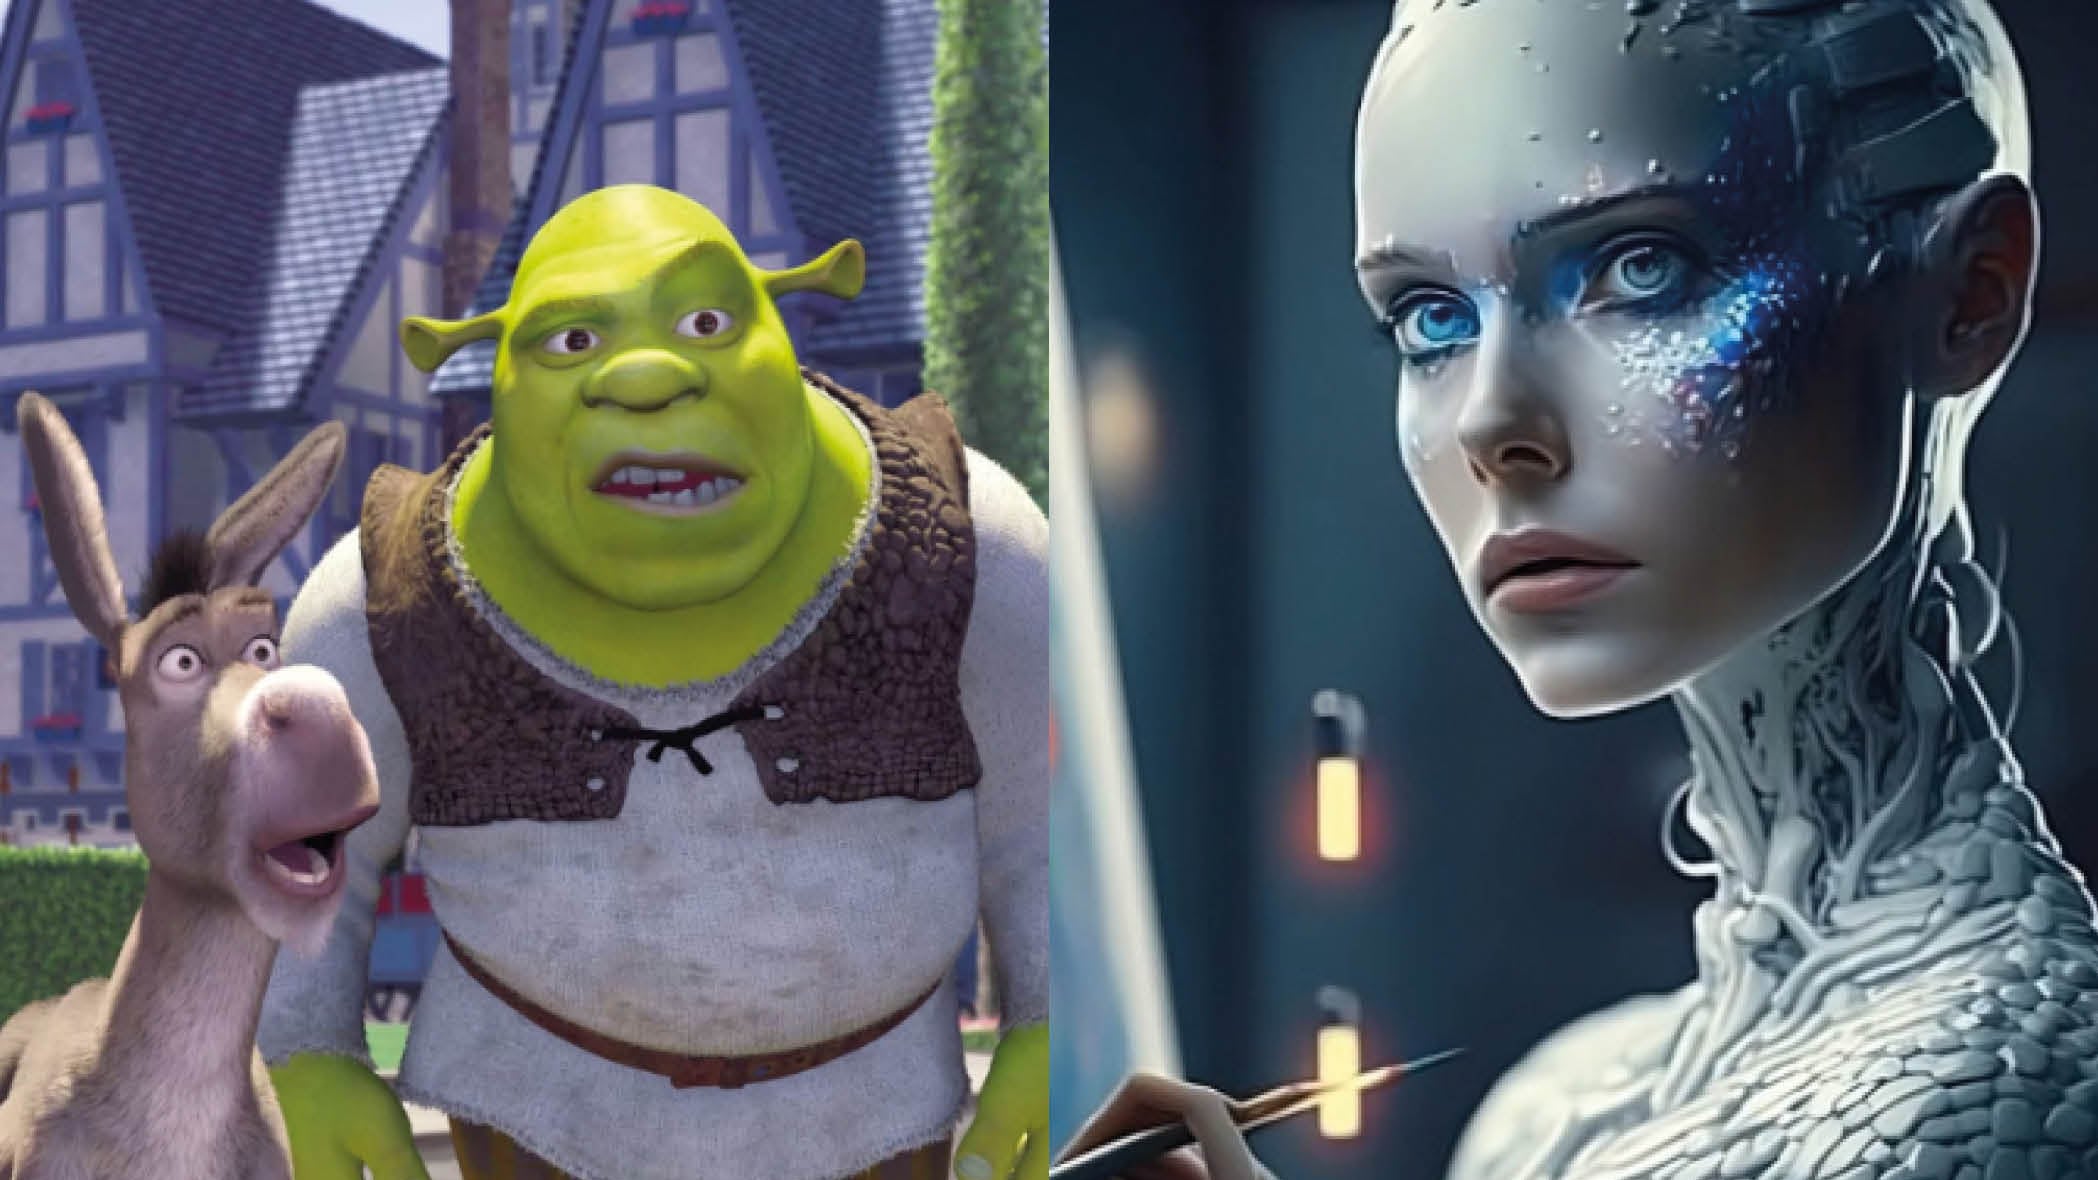 Así se verían los personajes de “Shrek” en la vida real gracias a la inteligencia artificial